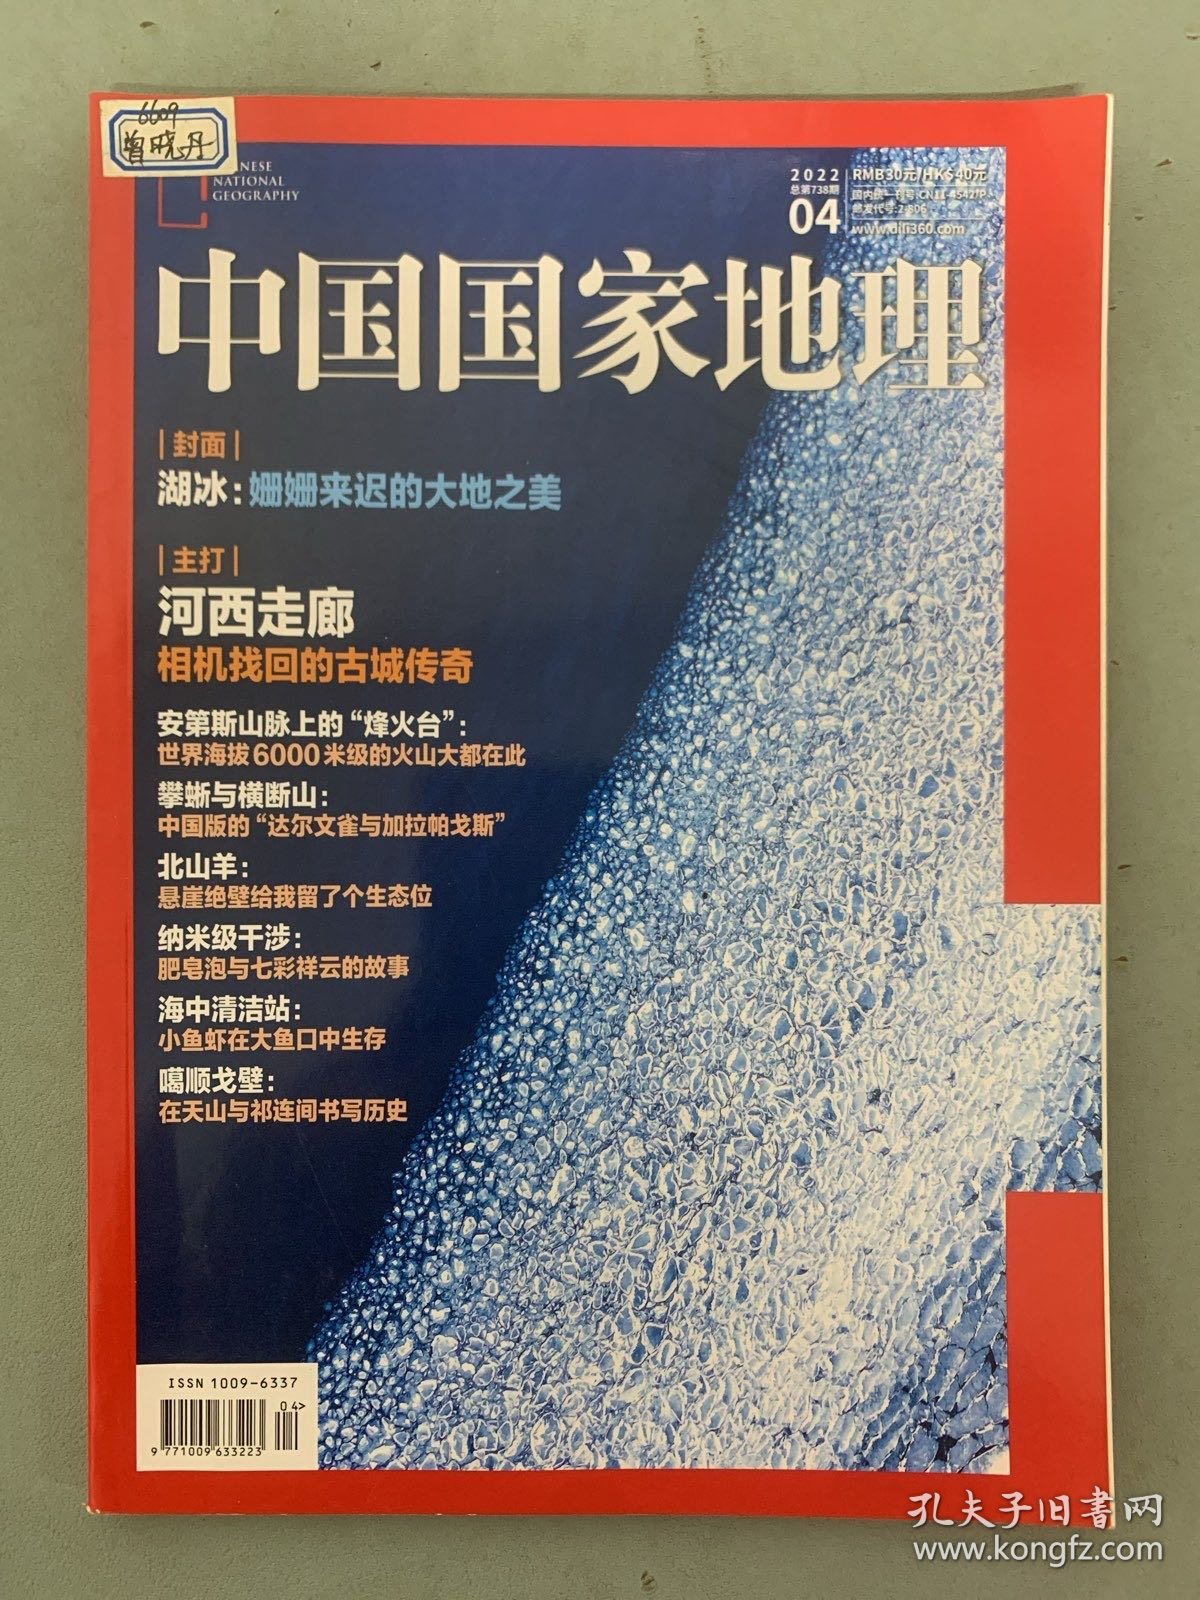 中国国家地理 2022年 月刊 第4期总第738期 封面：湖冰-姗姗来迟的大地之美 主打：河西走廊-相机找回的古城传奇 杂志